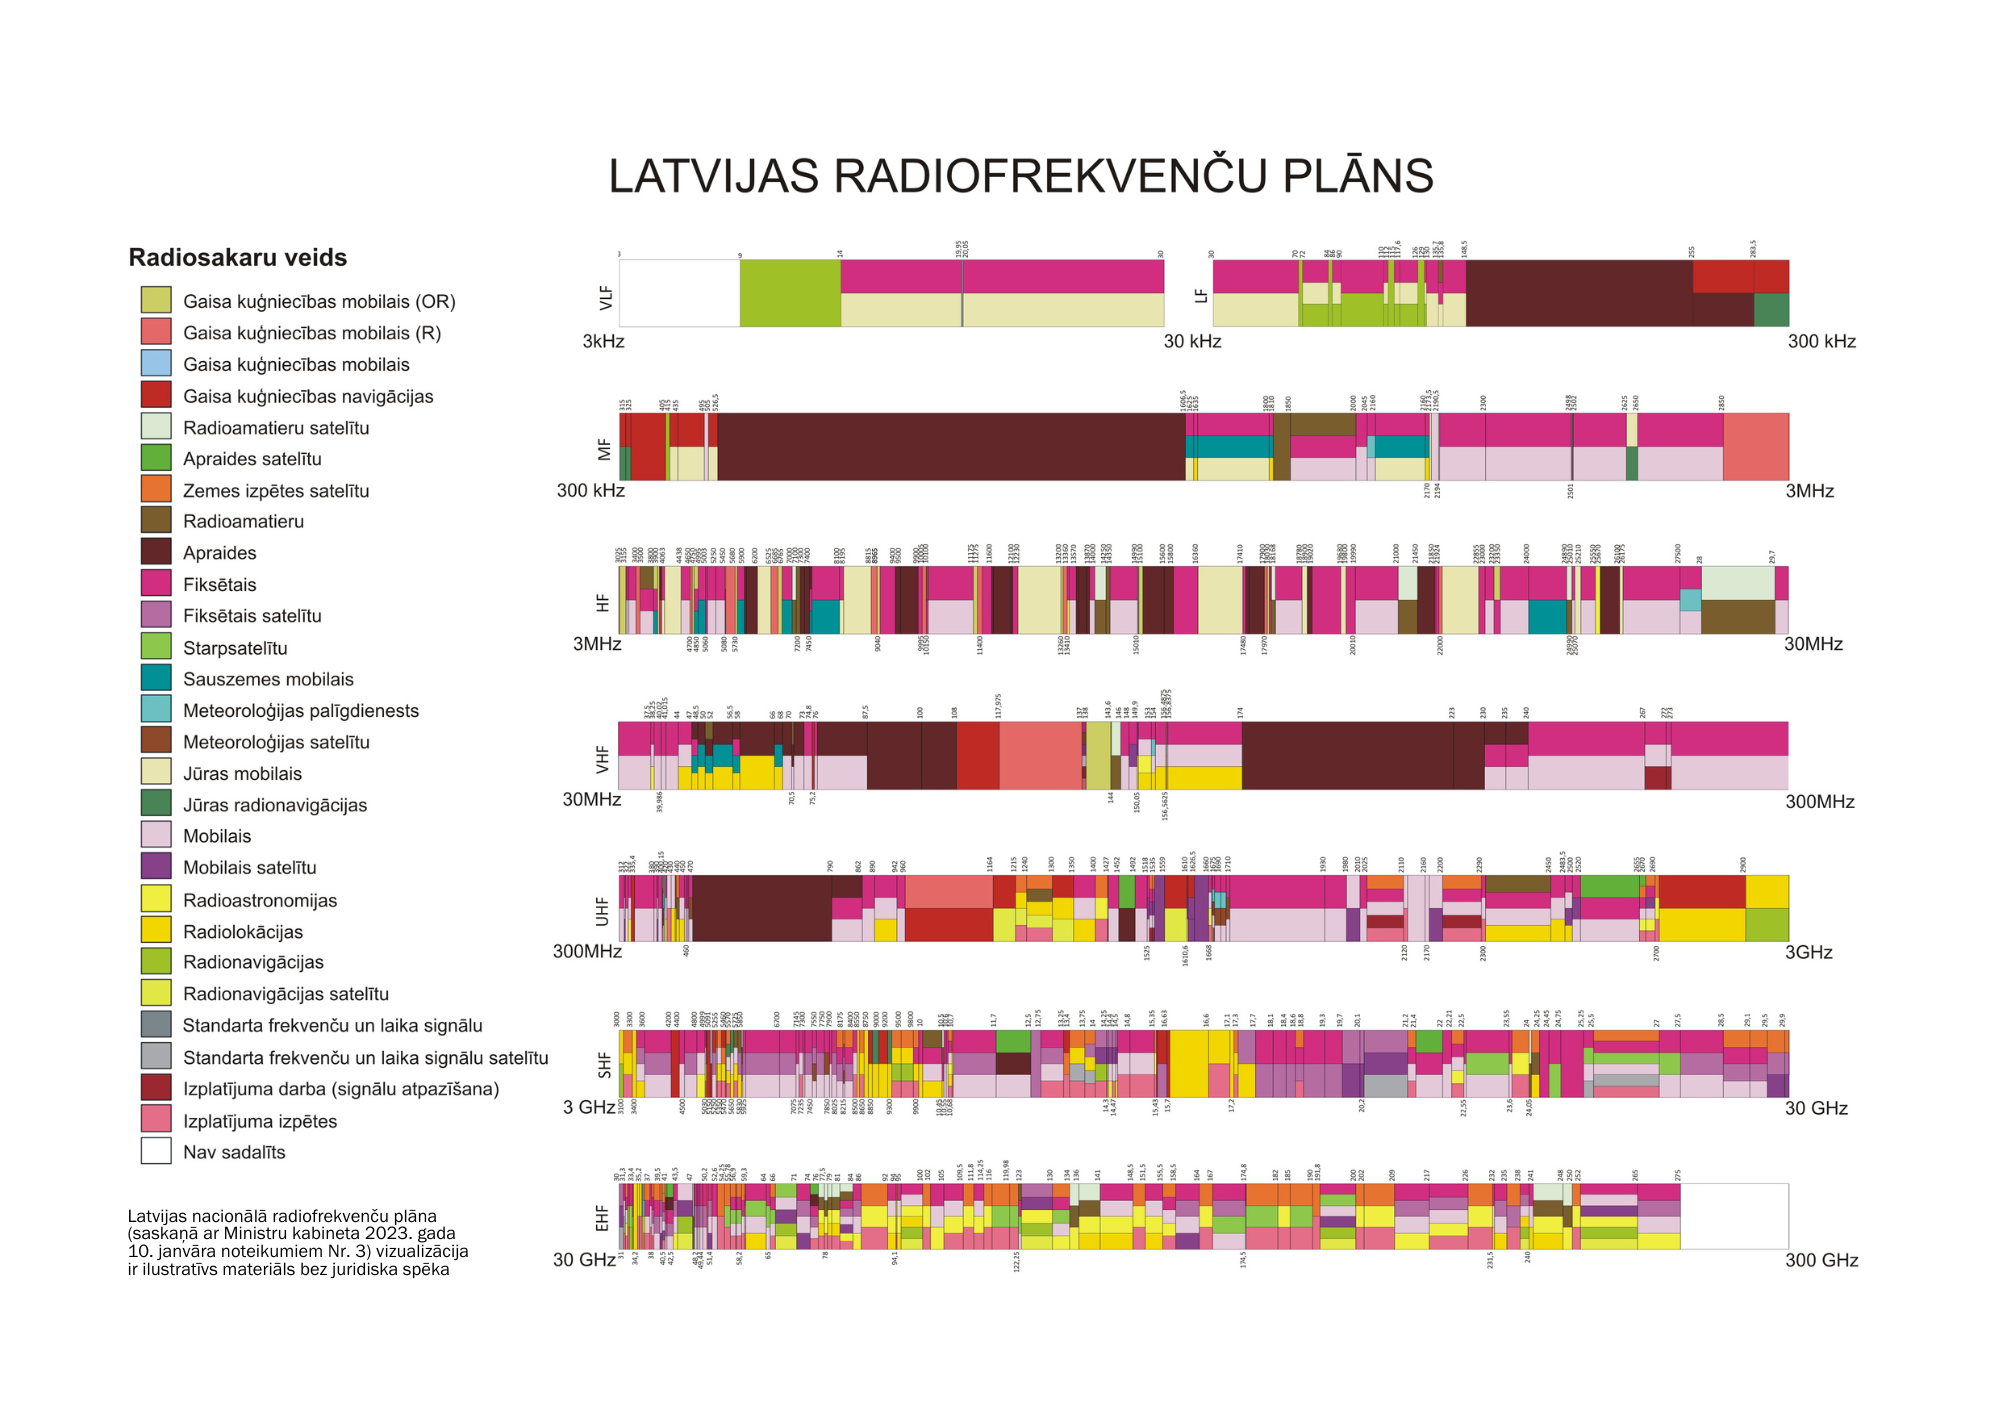 Latvijas radiofrekvenču plāna vizualizācija, kurā ar dažādām krāsām apzīmēti radiosakaru veidi, kas izvietoti pa frekvenču diapazoniem: VLF; MF; HF; VHF; UHF; SHF; EHF